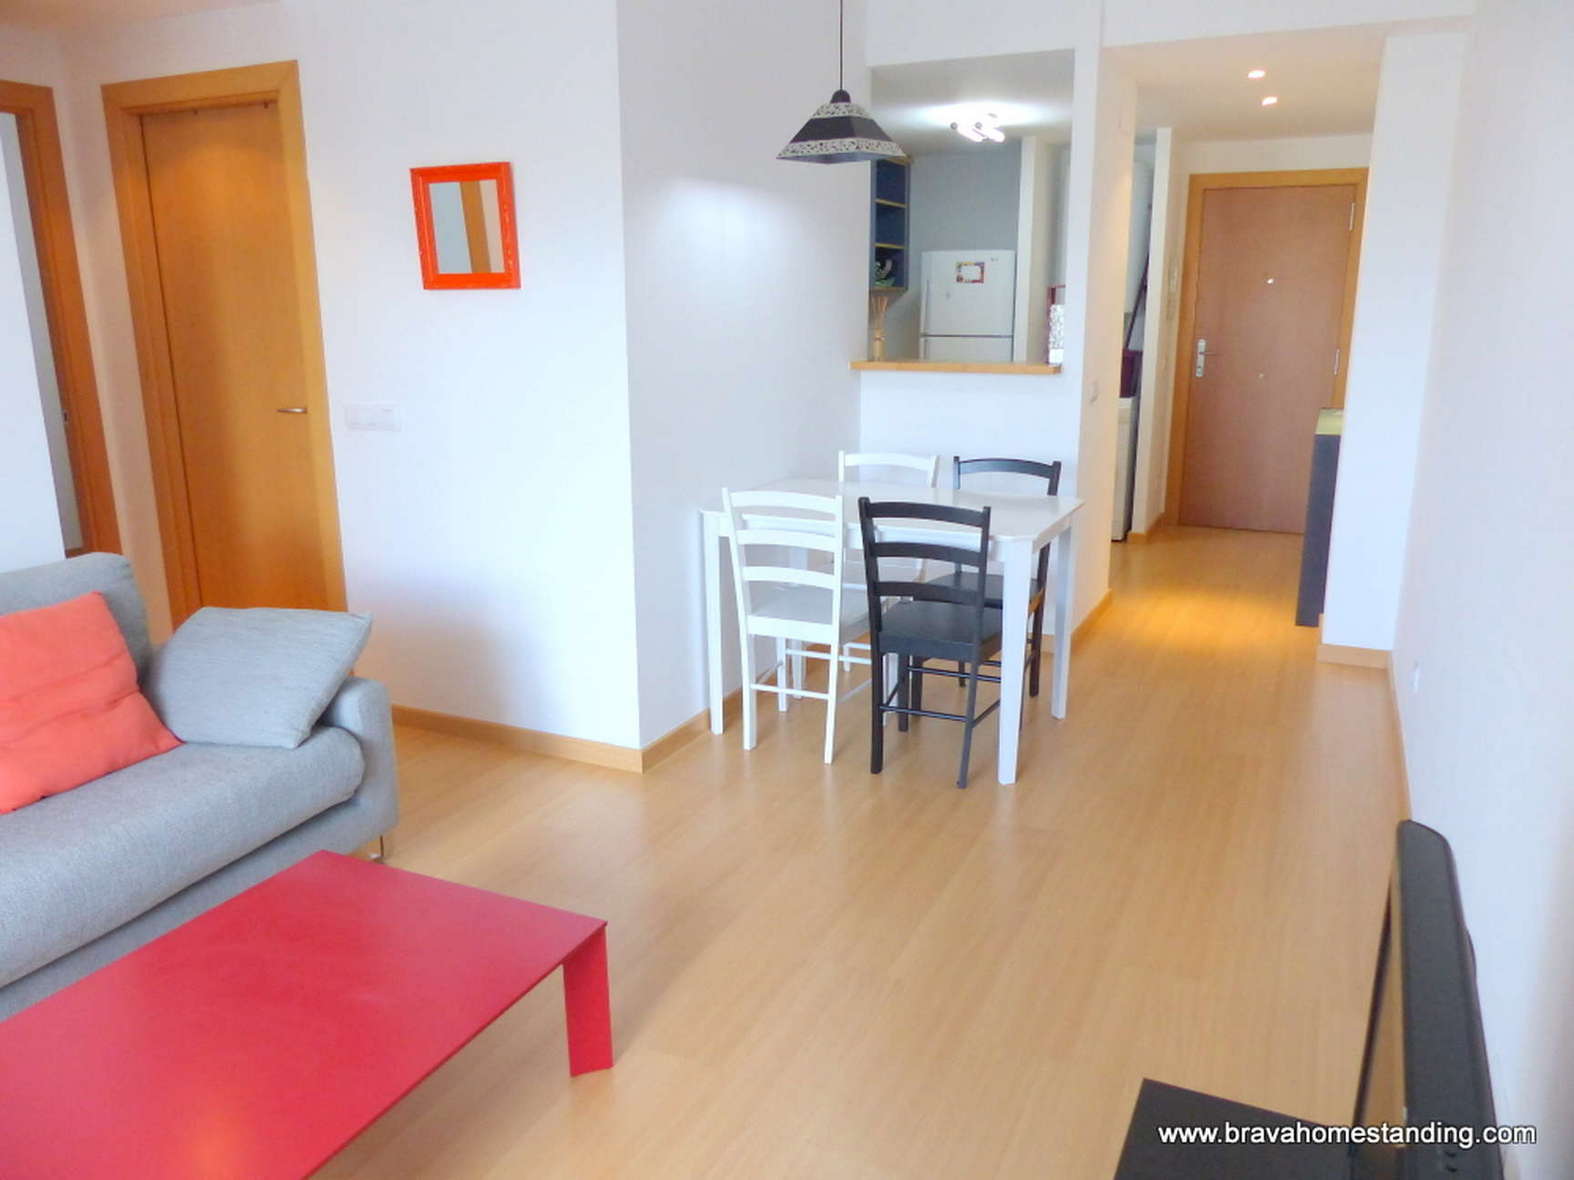 Bonito apartamento de 2 dormitorios con piscina comunitaria en venta en Rosas